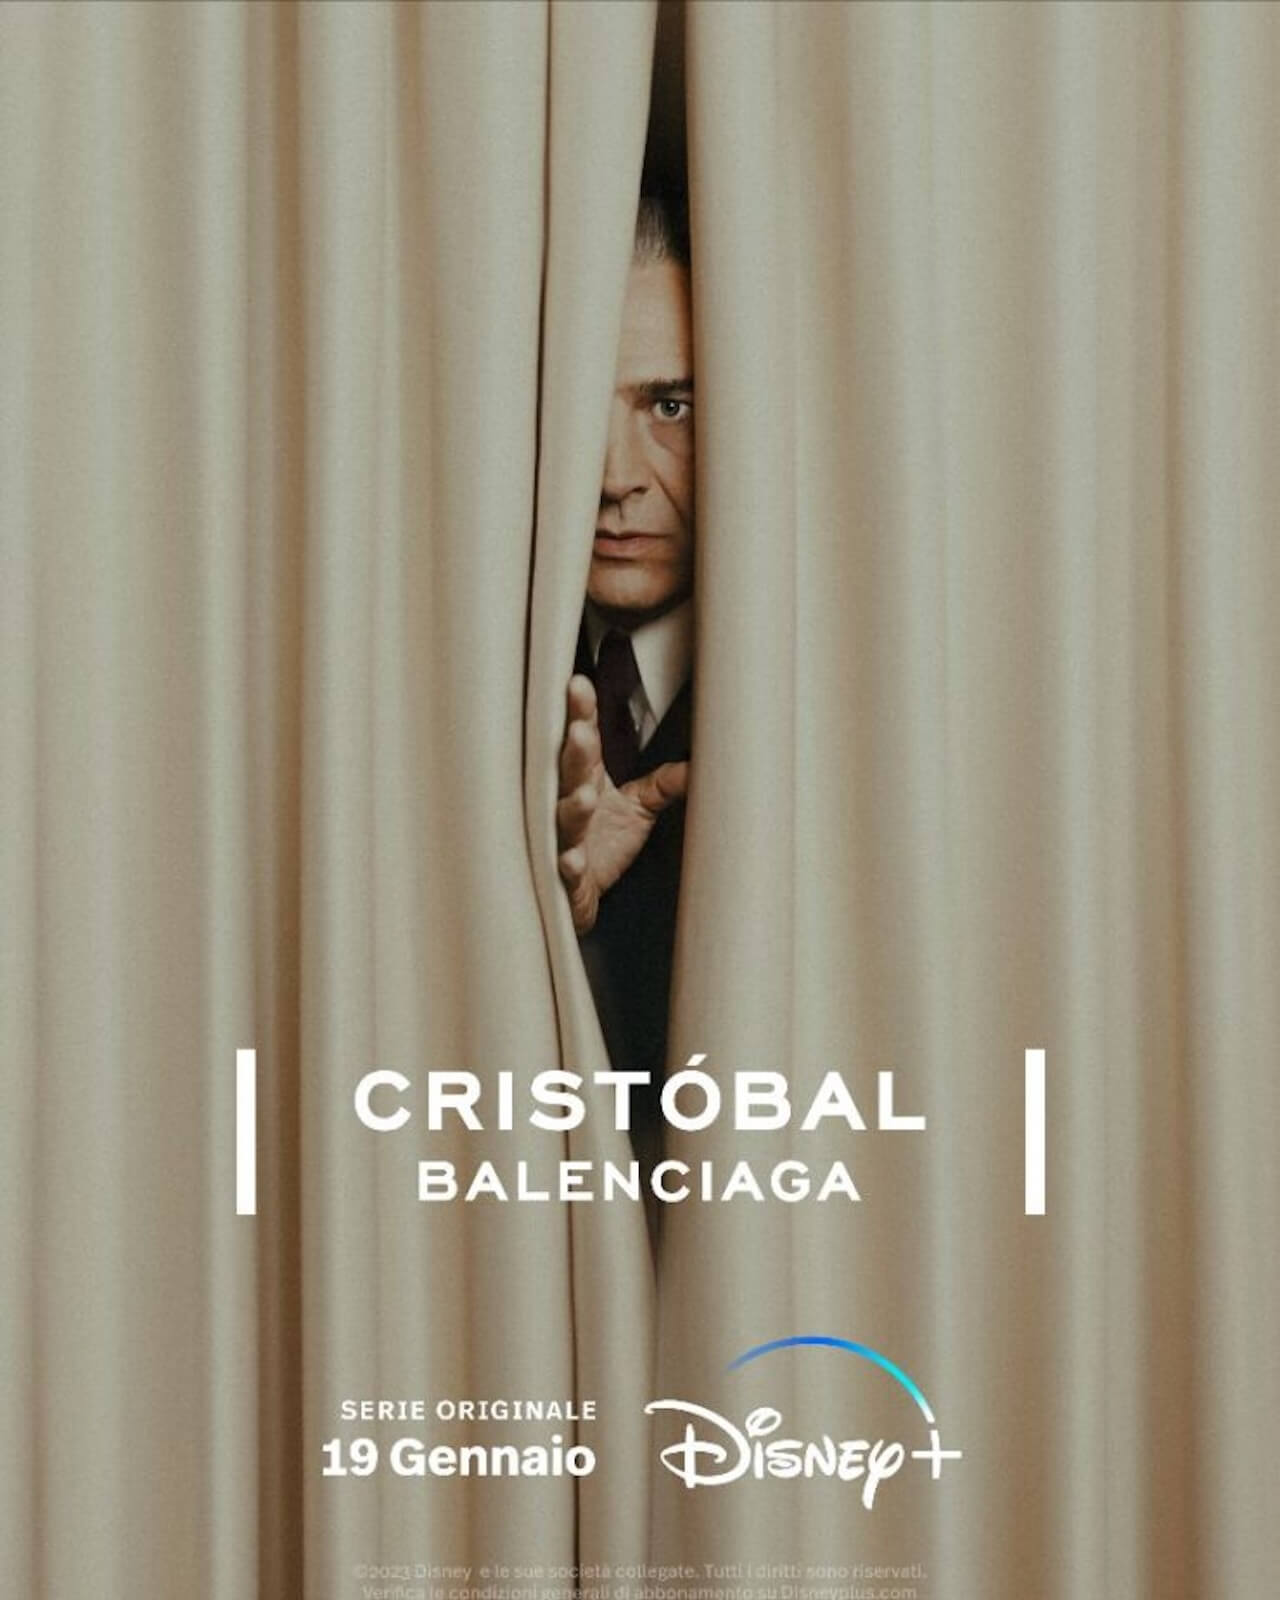 Cristóbal Balenciaga, il primo trailer della serie che esploderà l'identità queer dello stilista - Cristobal Balenciaga - Gay.it